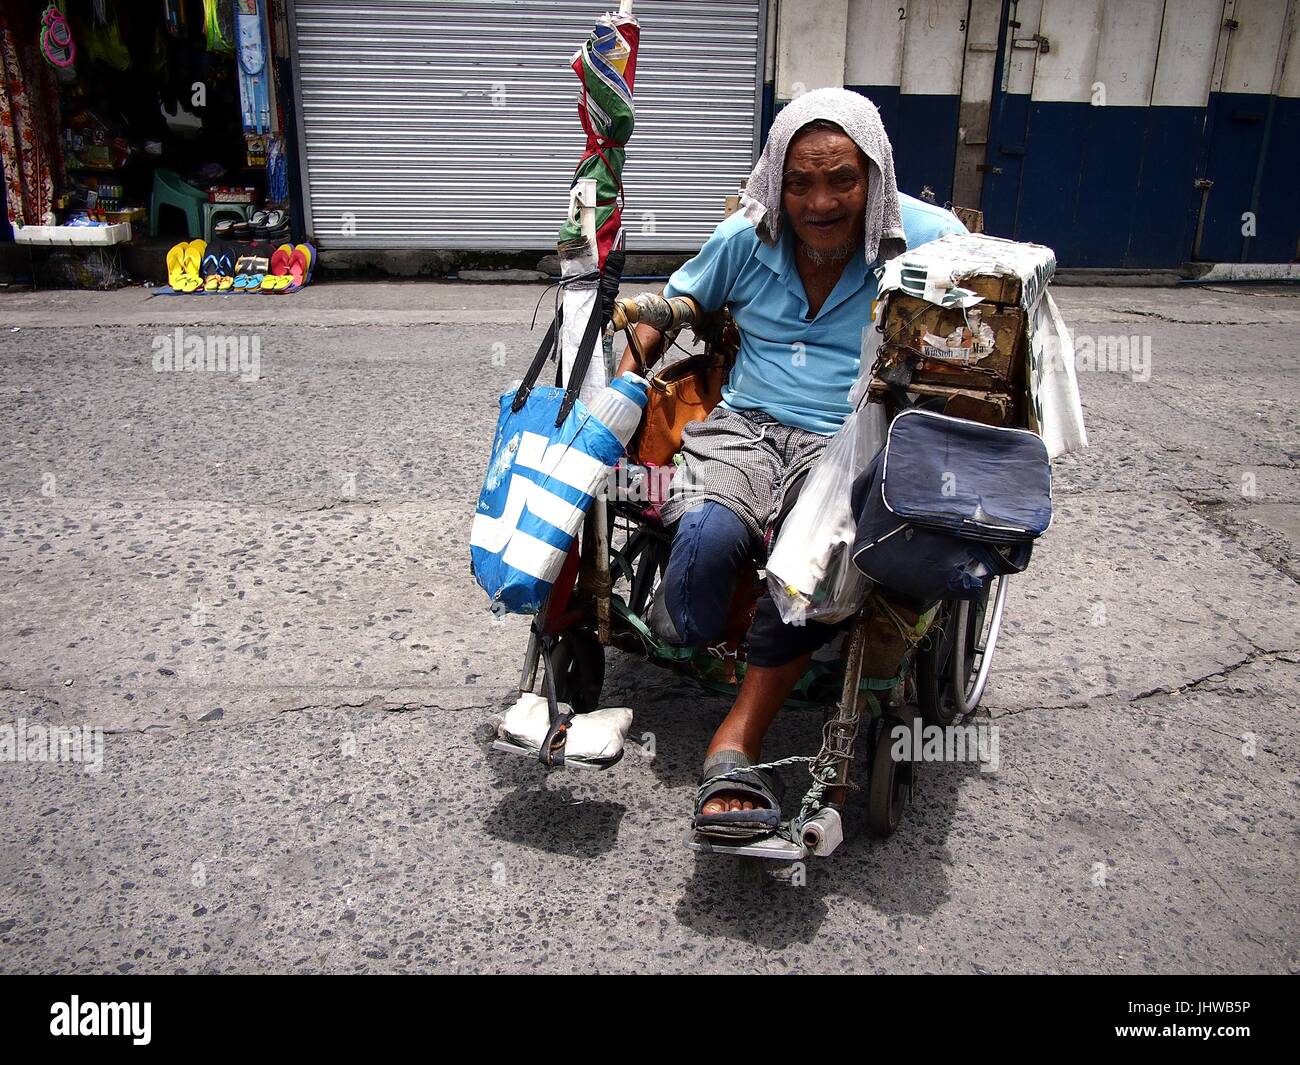 CAINTA CITY, Philippinen - 12. Juli 2017: Ein Alter behinderter Mann rollt in seinem Rollstuhl auf einem öffentlichen Markt. Stockfoto